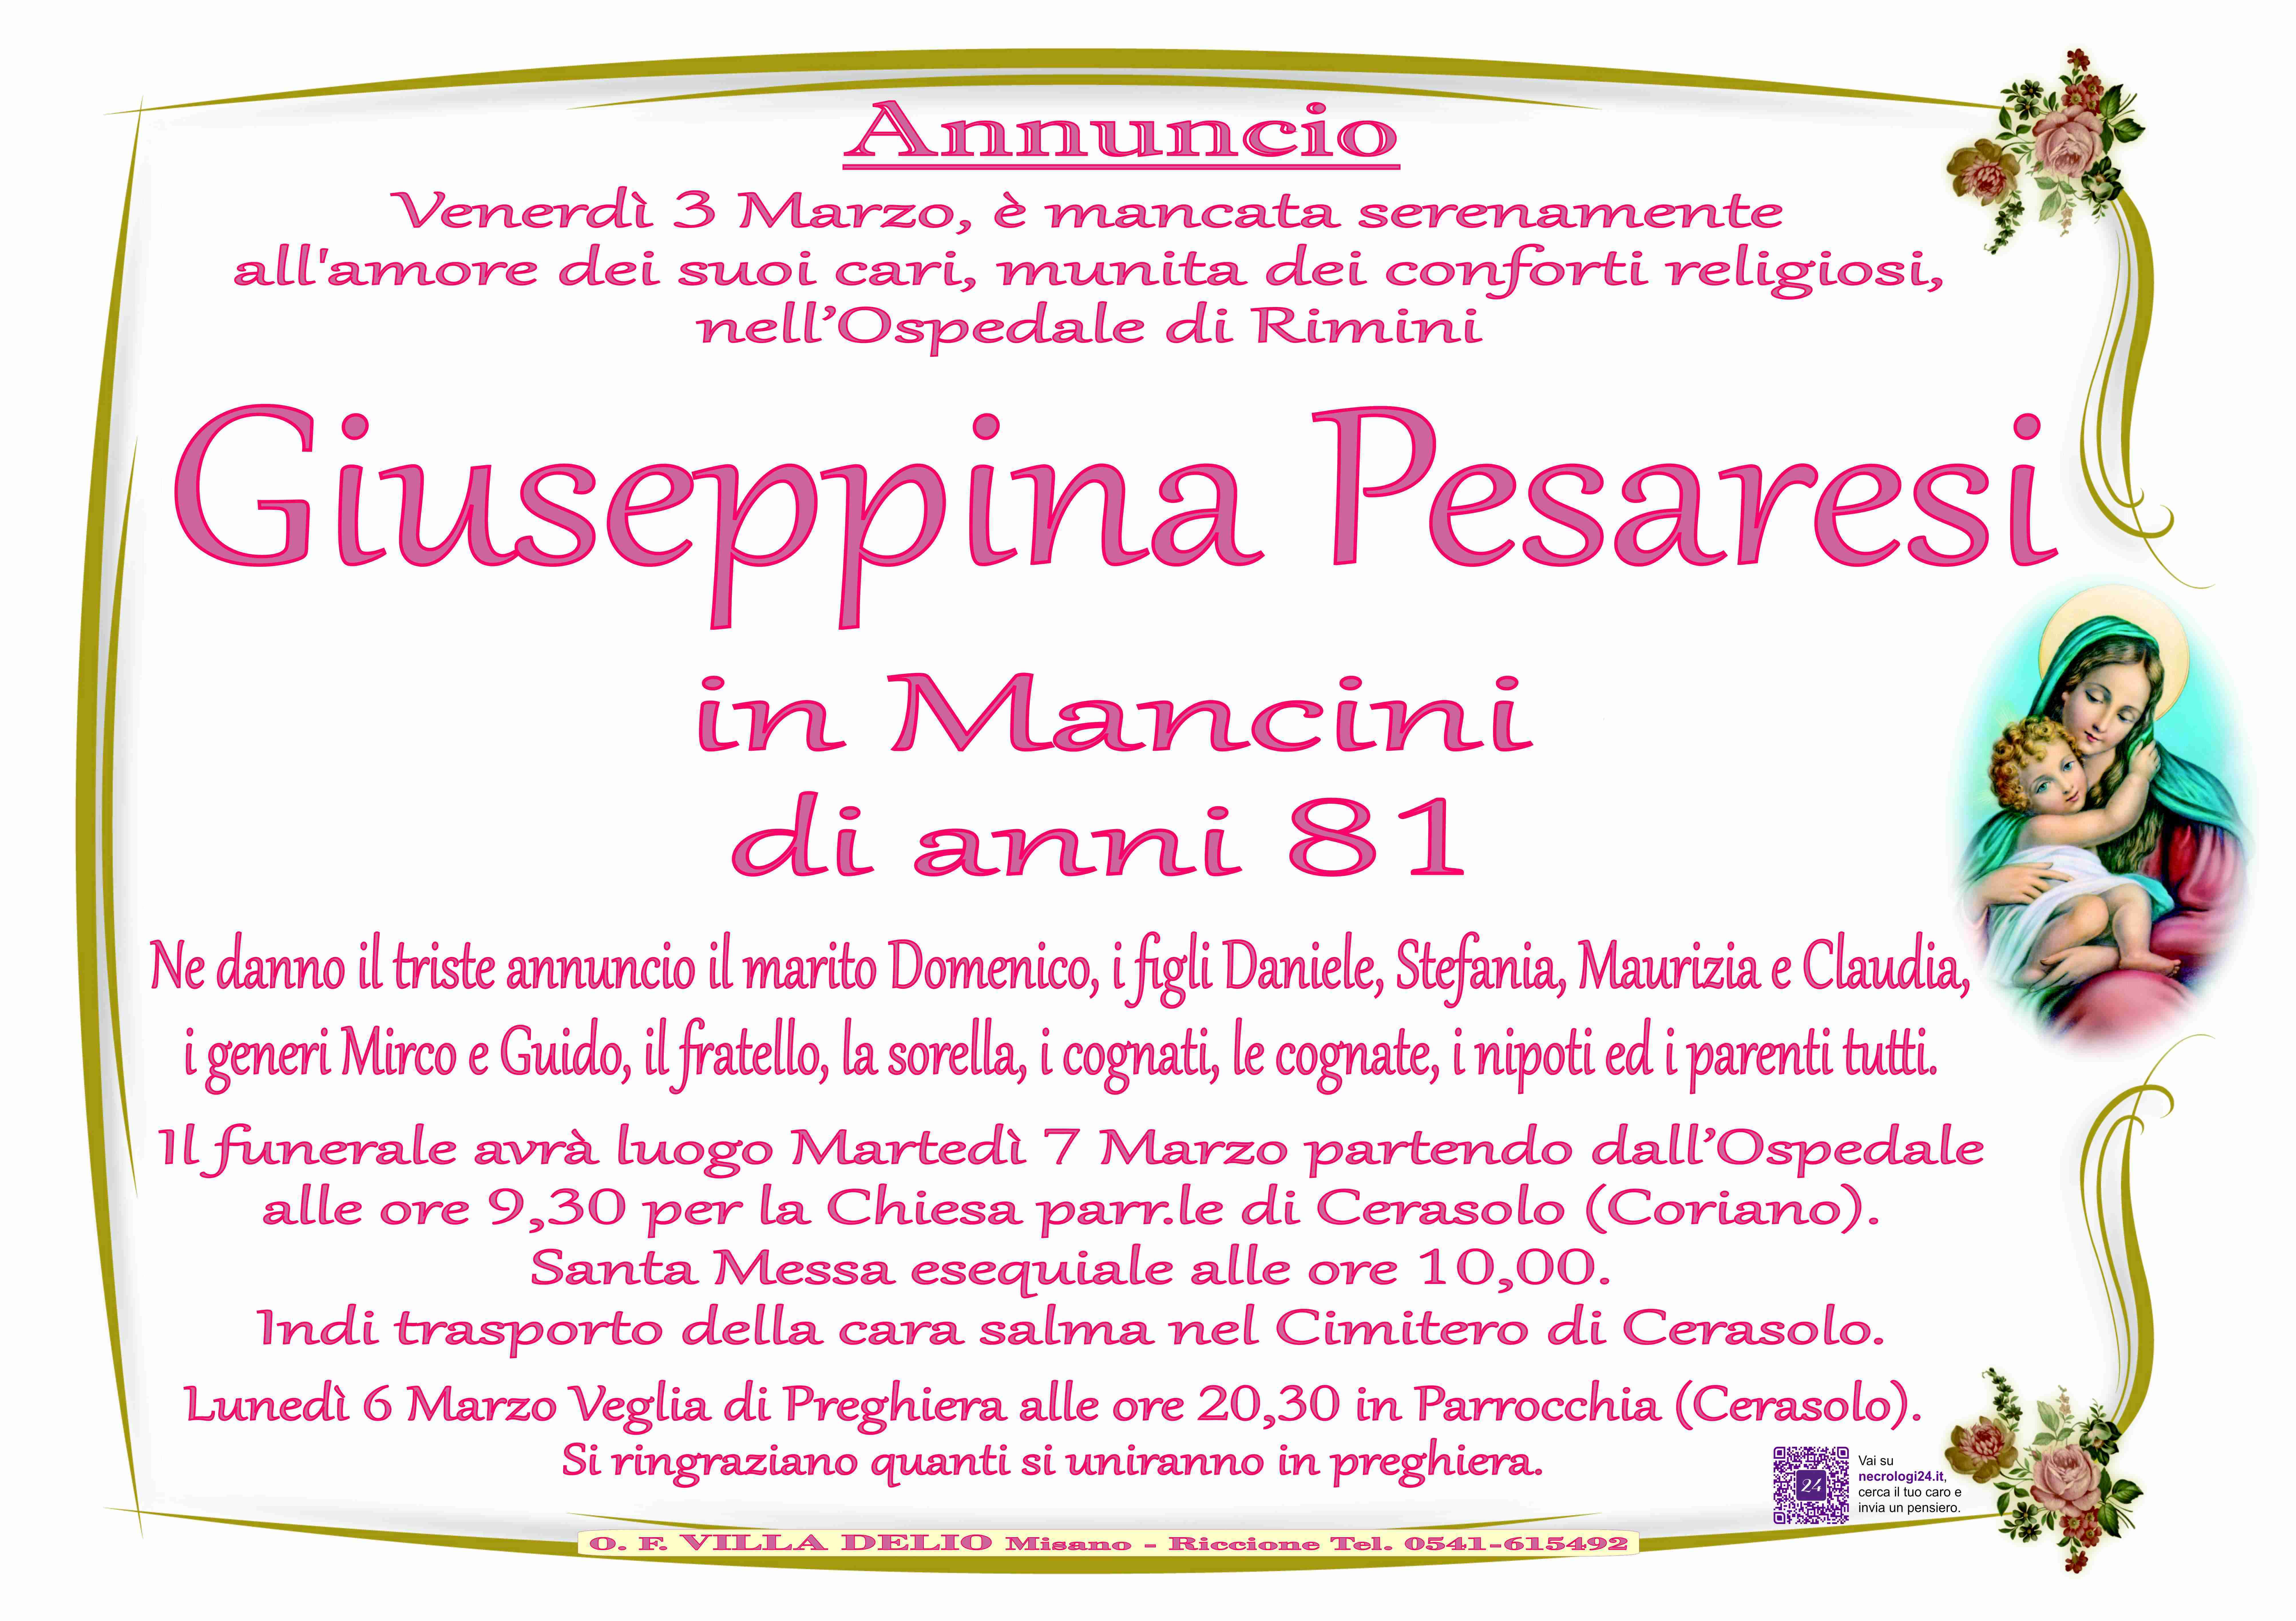 Giuseppina Pesaresi